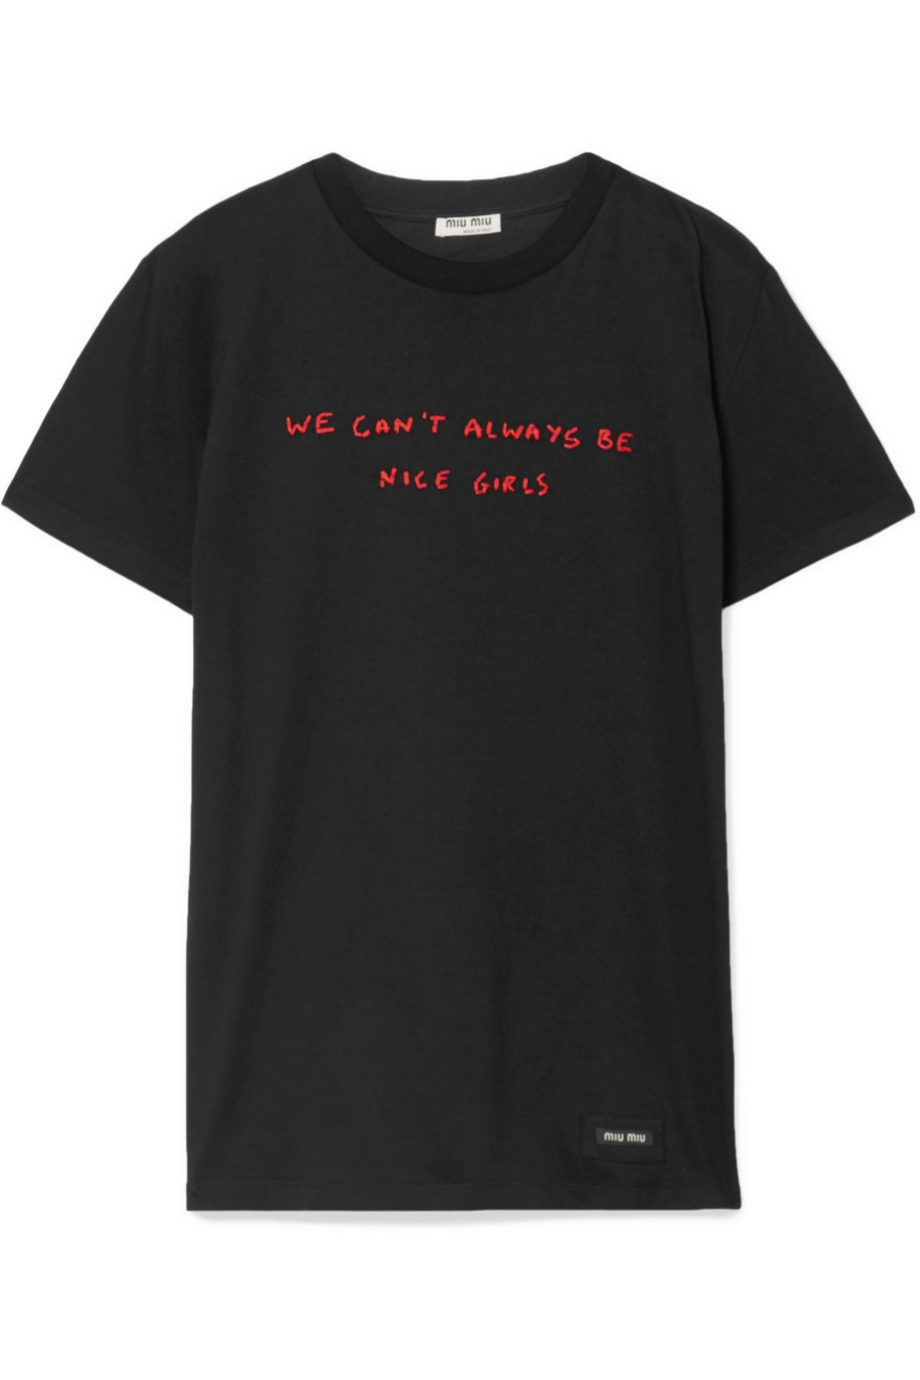 Camiseta en negro y mensaje de Miu Miu para Net a porter (c.p.v)